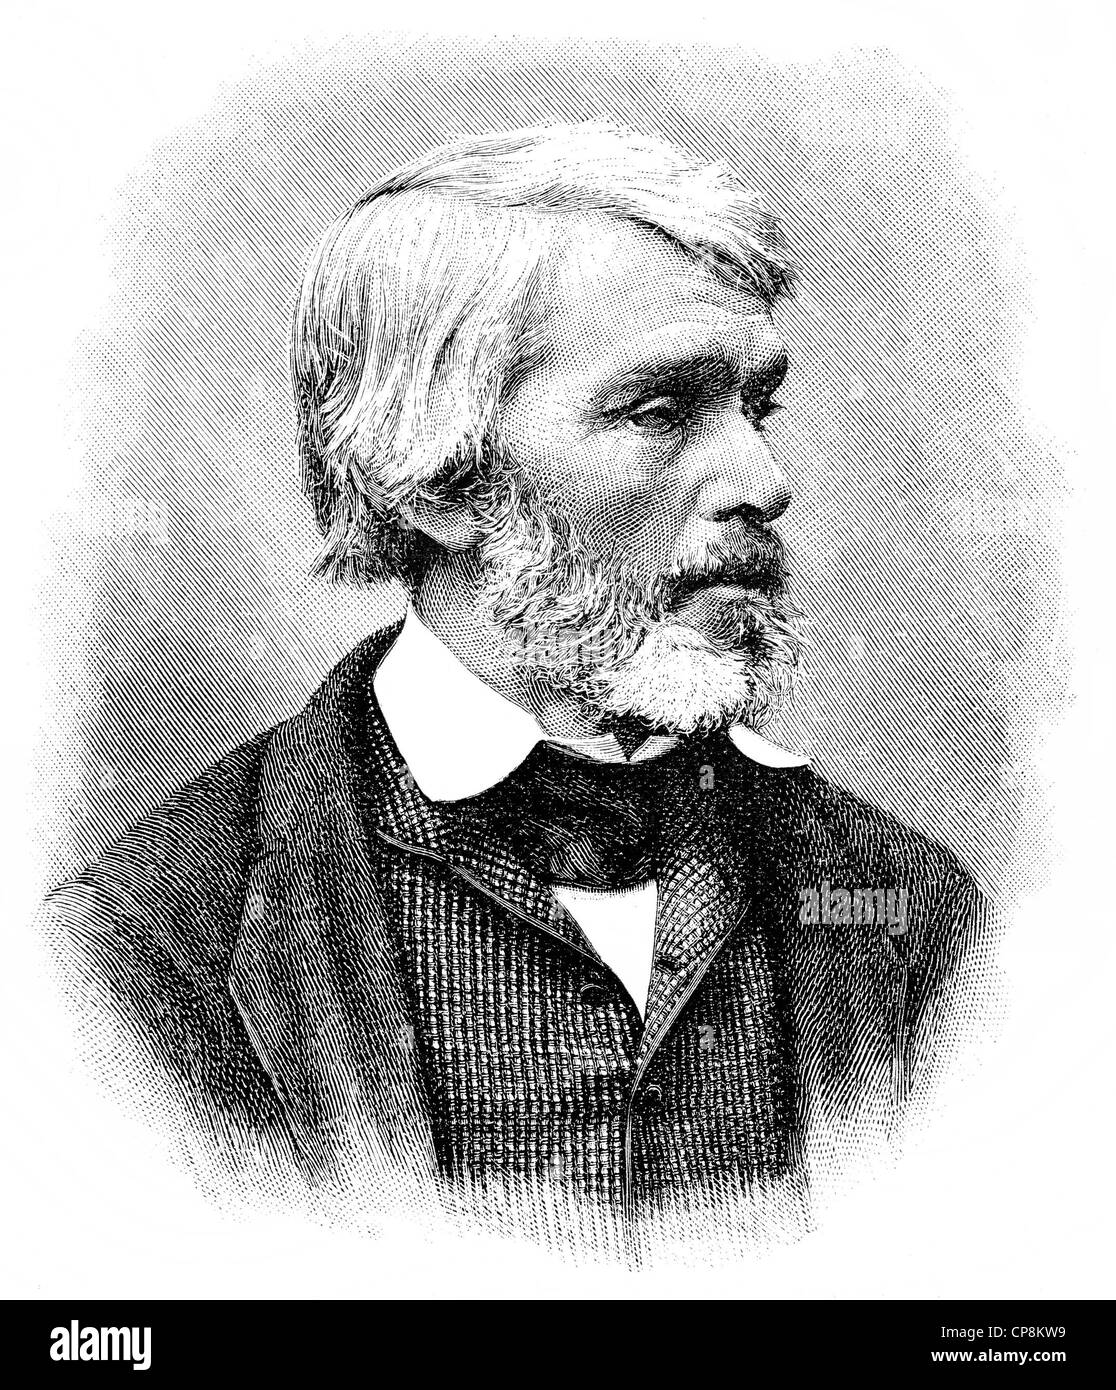 Thomas Carlyle, 1795 - 1881, a Scottish essayist and historian, Historische Zeichnung aus dem 19. Jahrhundert, Portrait von Thom Stock Photo